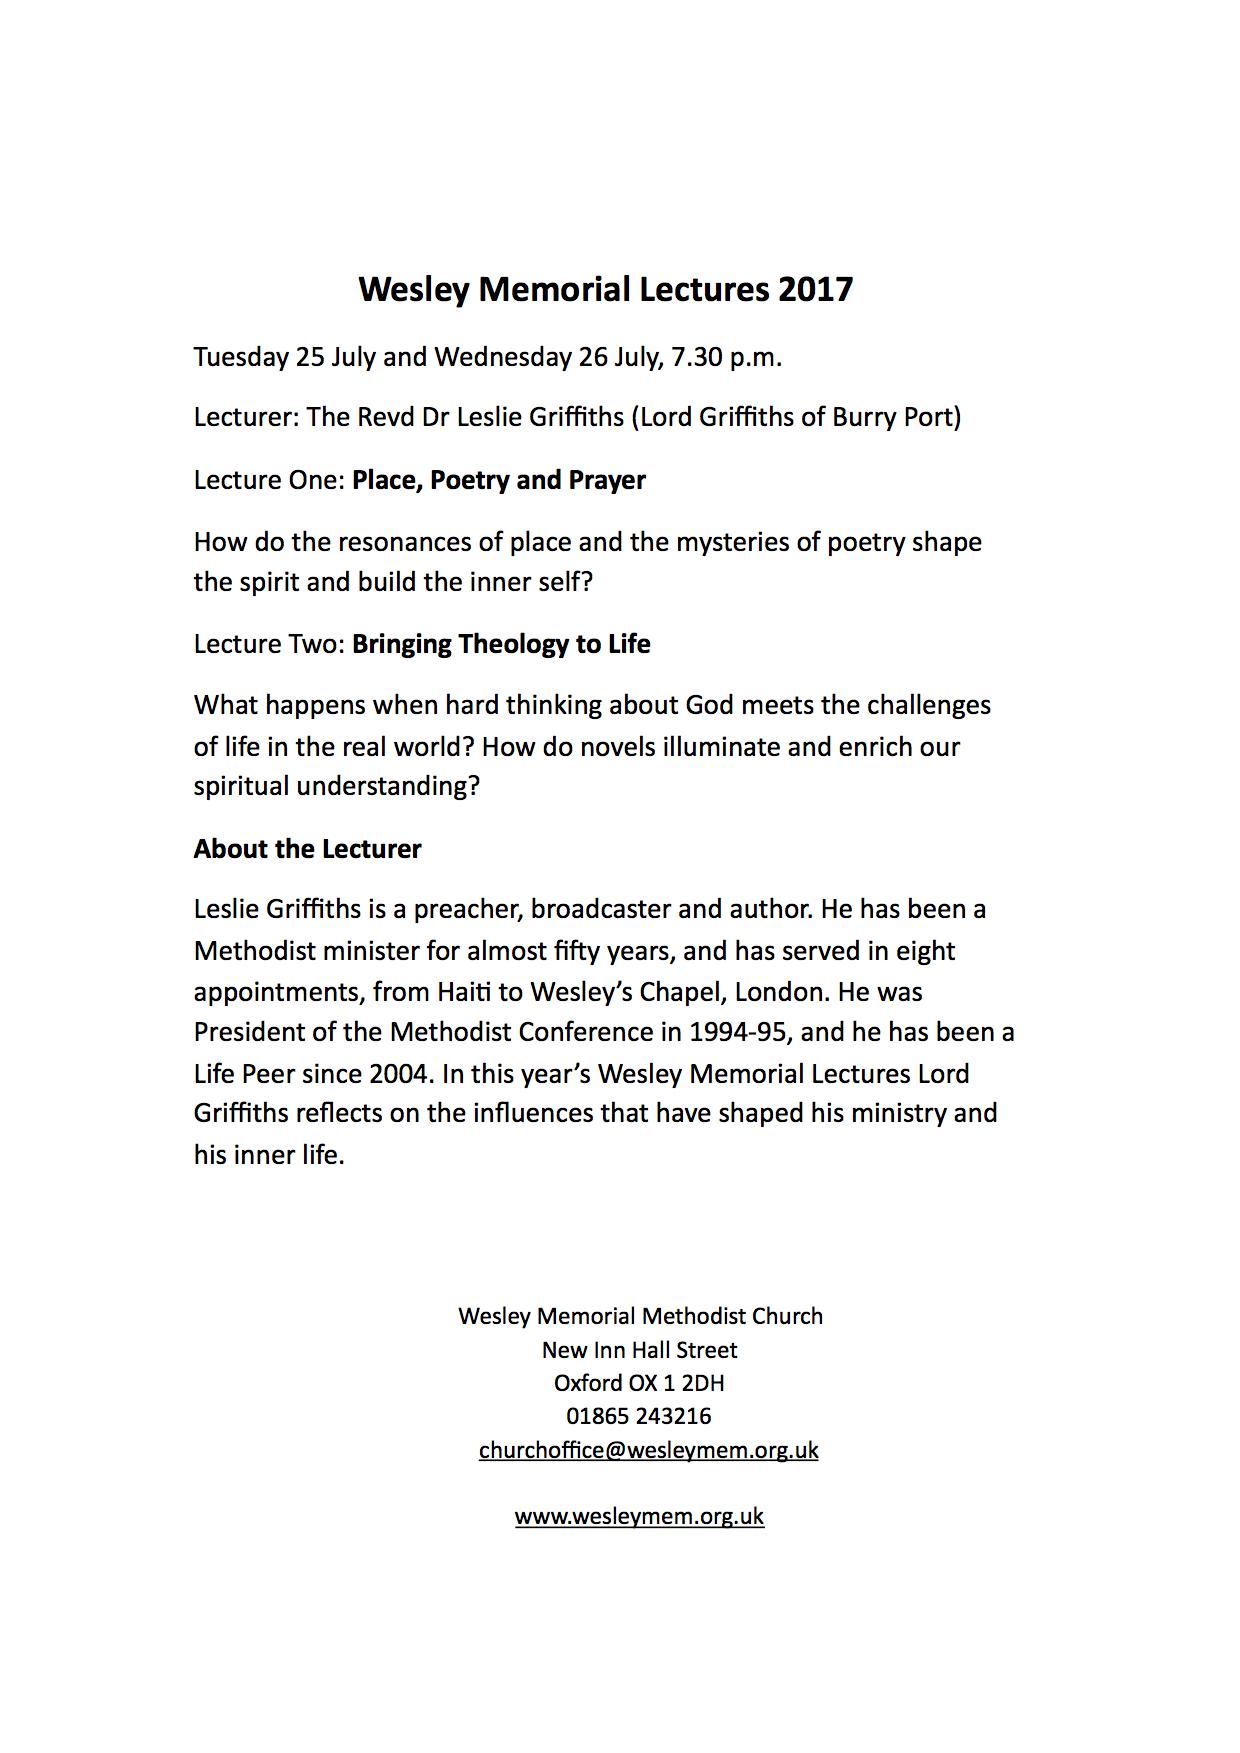 Leaflet WM Lecture 2017_final details